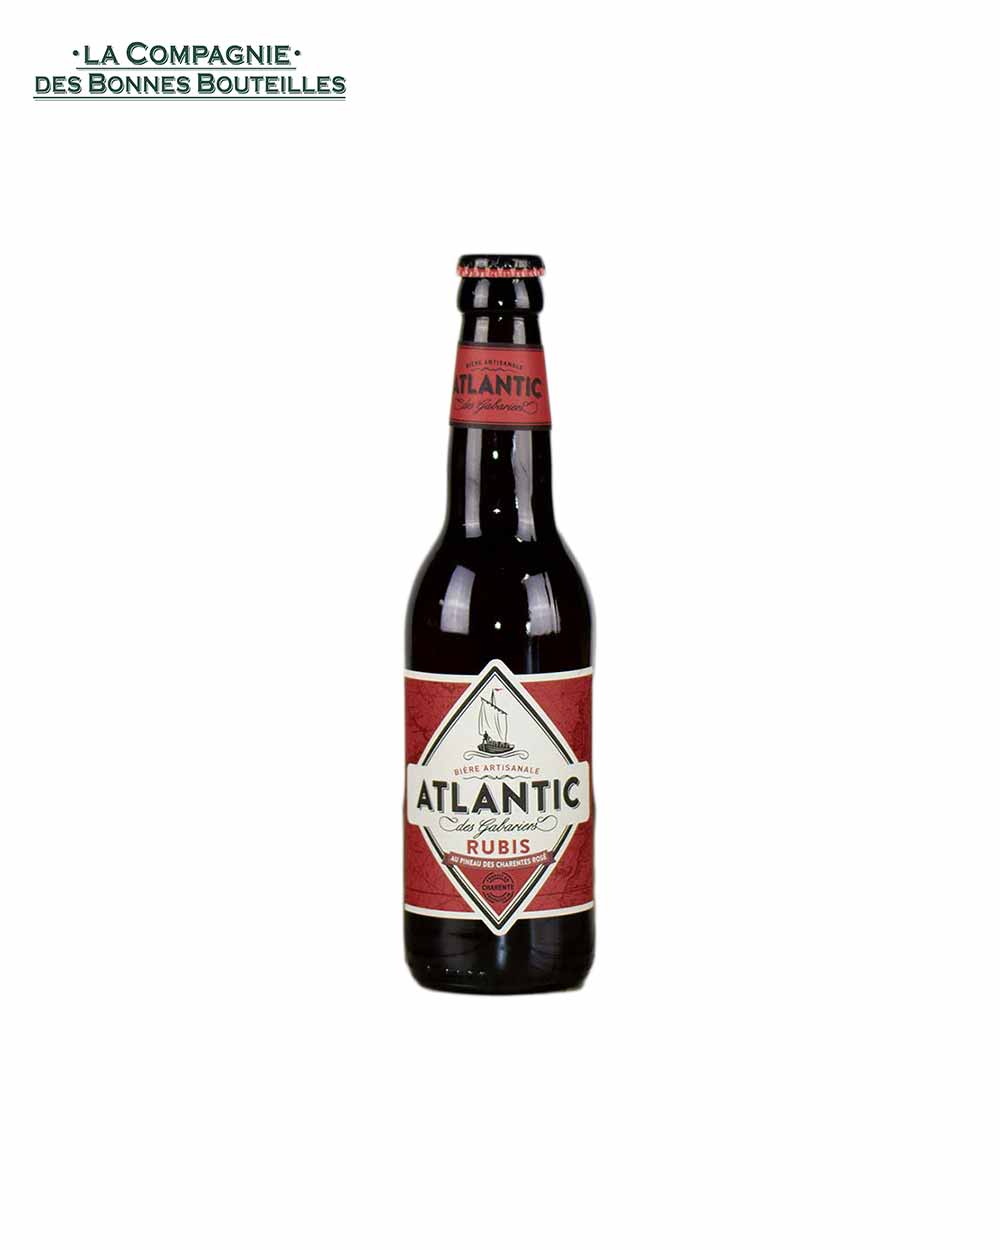 Bière Atlantic des Gabariers Rubis au Pineau Rosé 6° 33cl